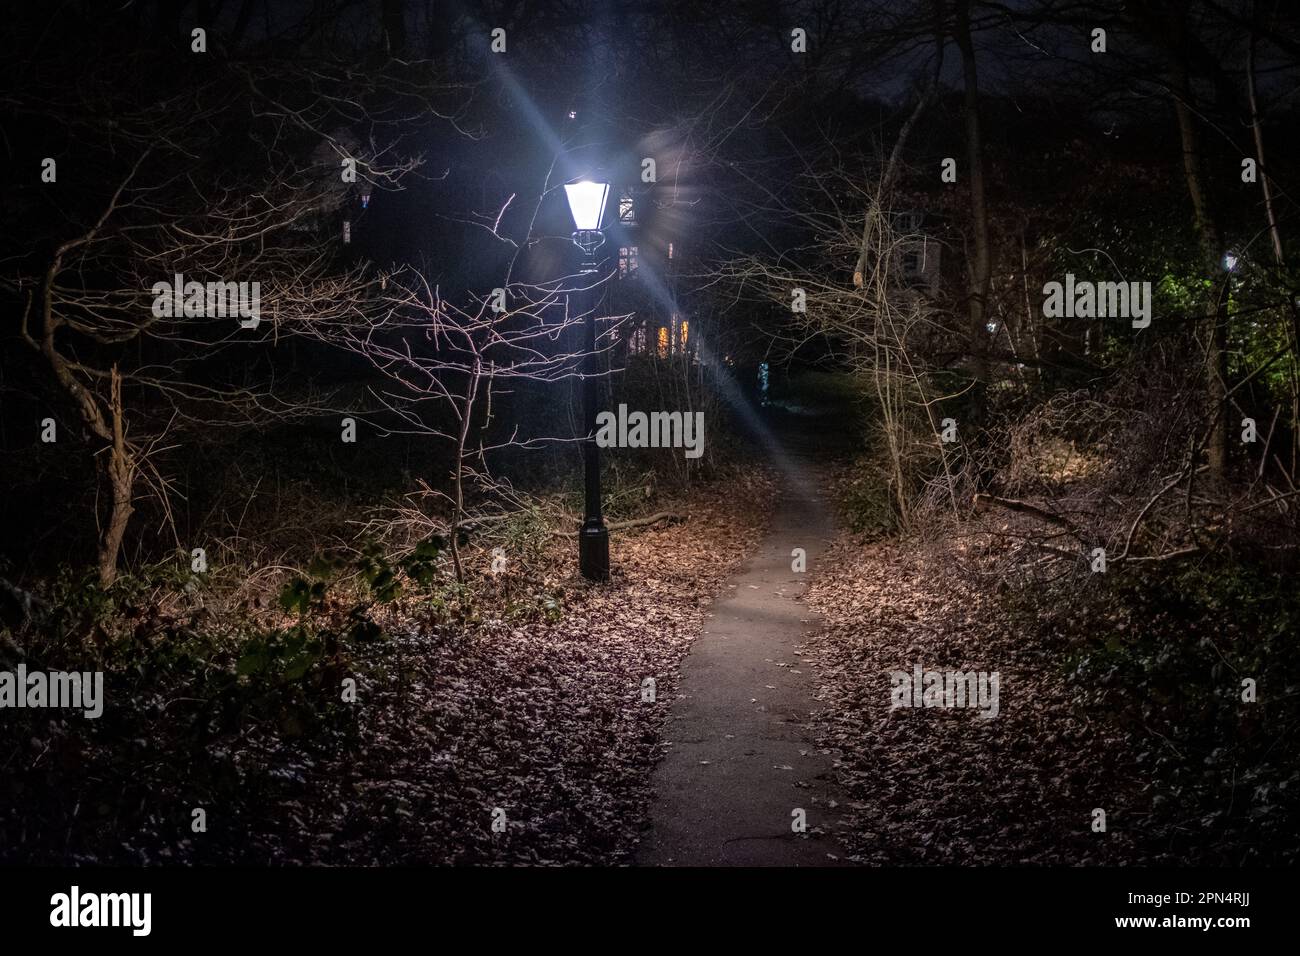 Hampstead Heath at night, London, UK Stock Photo